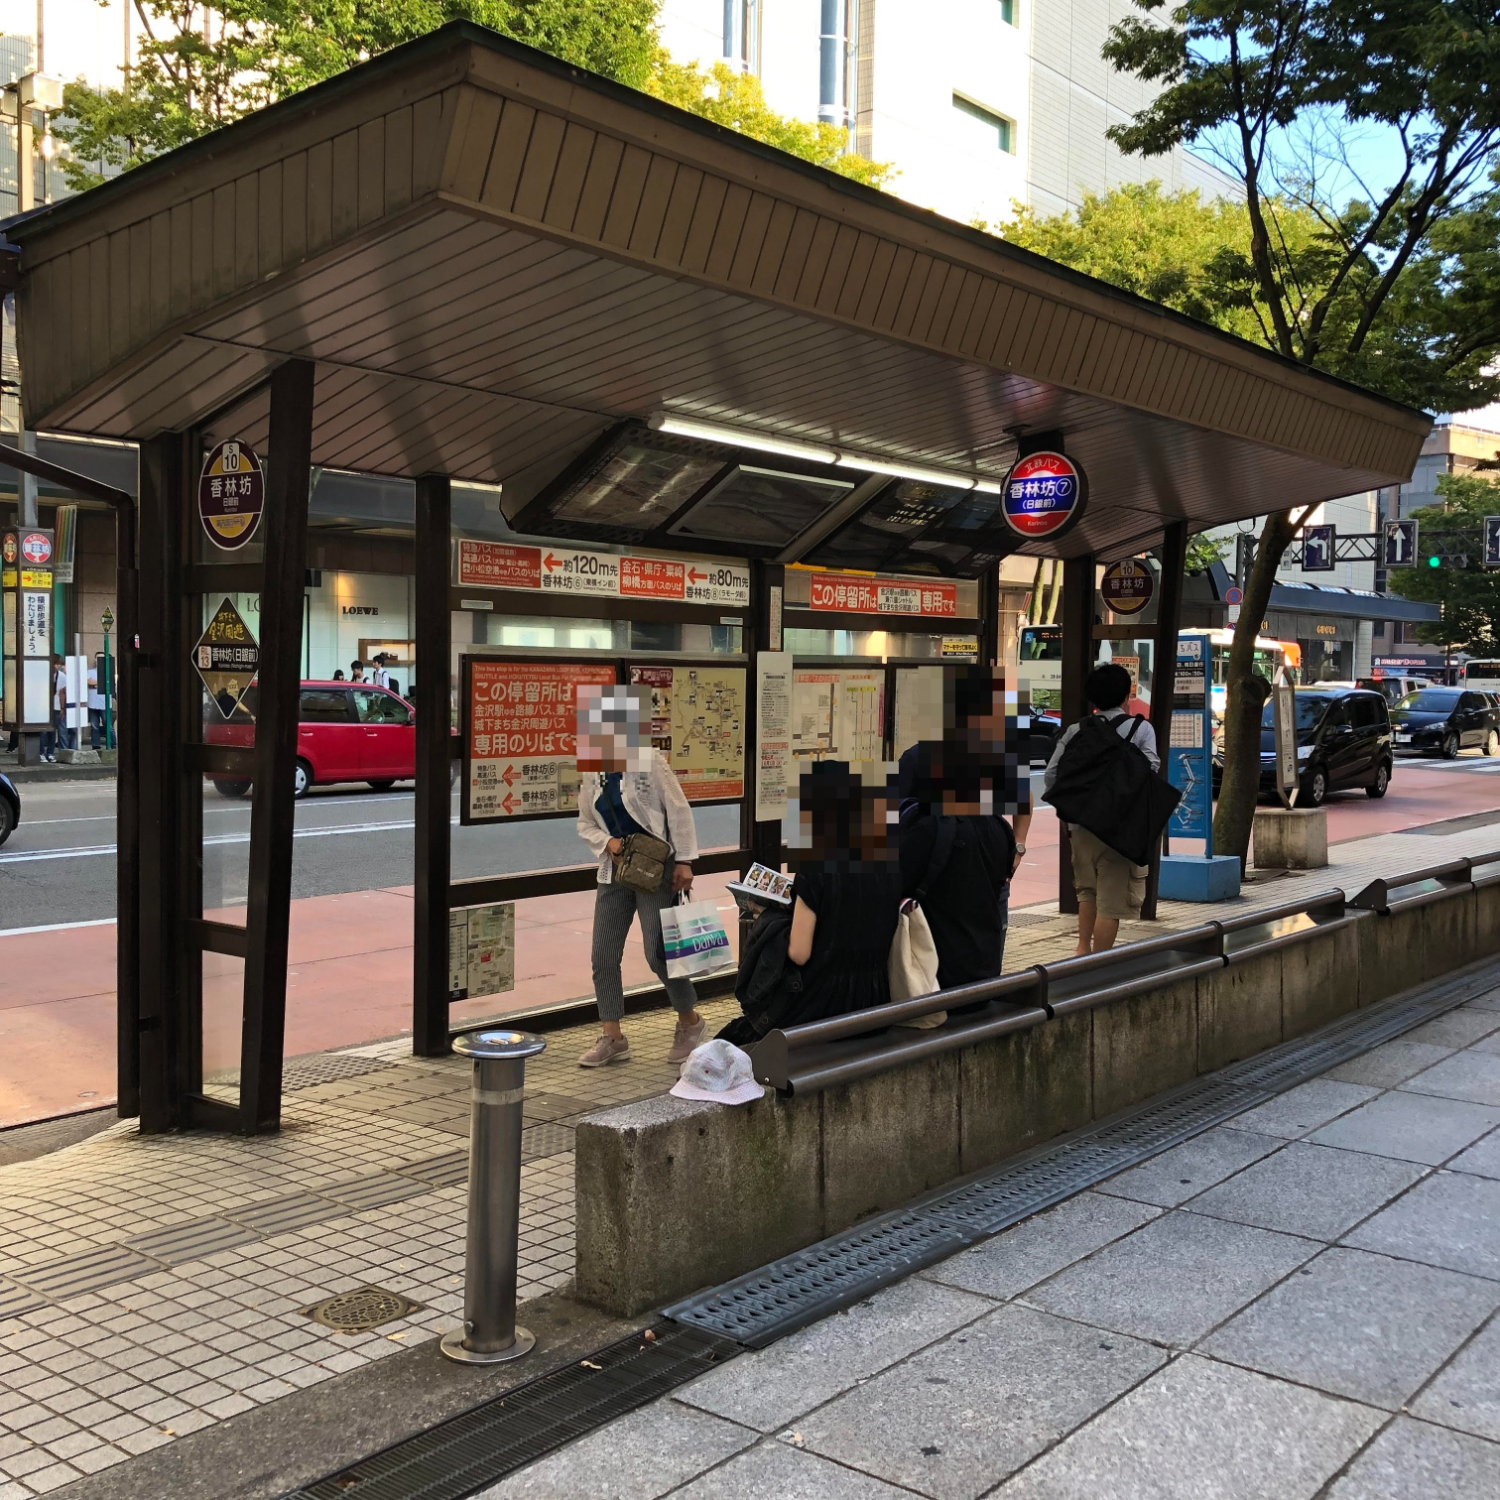 1.金沢駅のバス乗り場8・9・10番乗り場の香林坊・広小路経由のバスに乗り、『香林坊』というバス停で降ります。